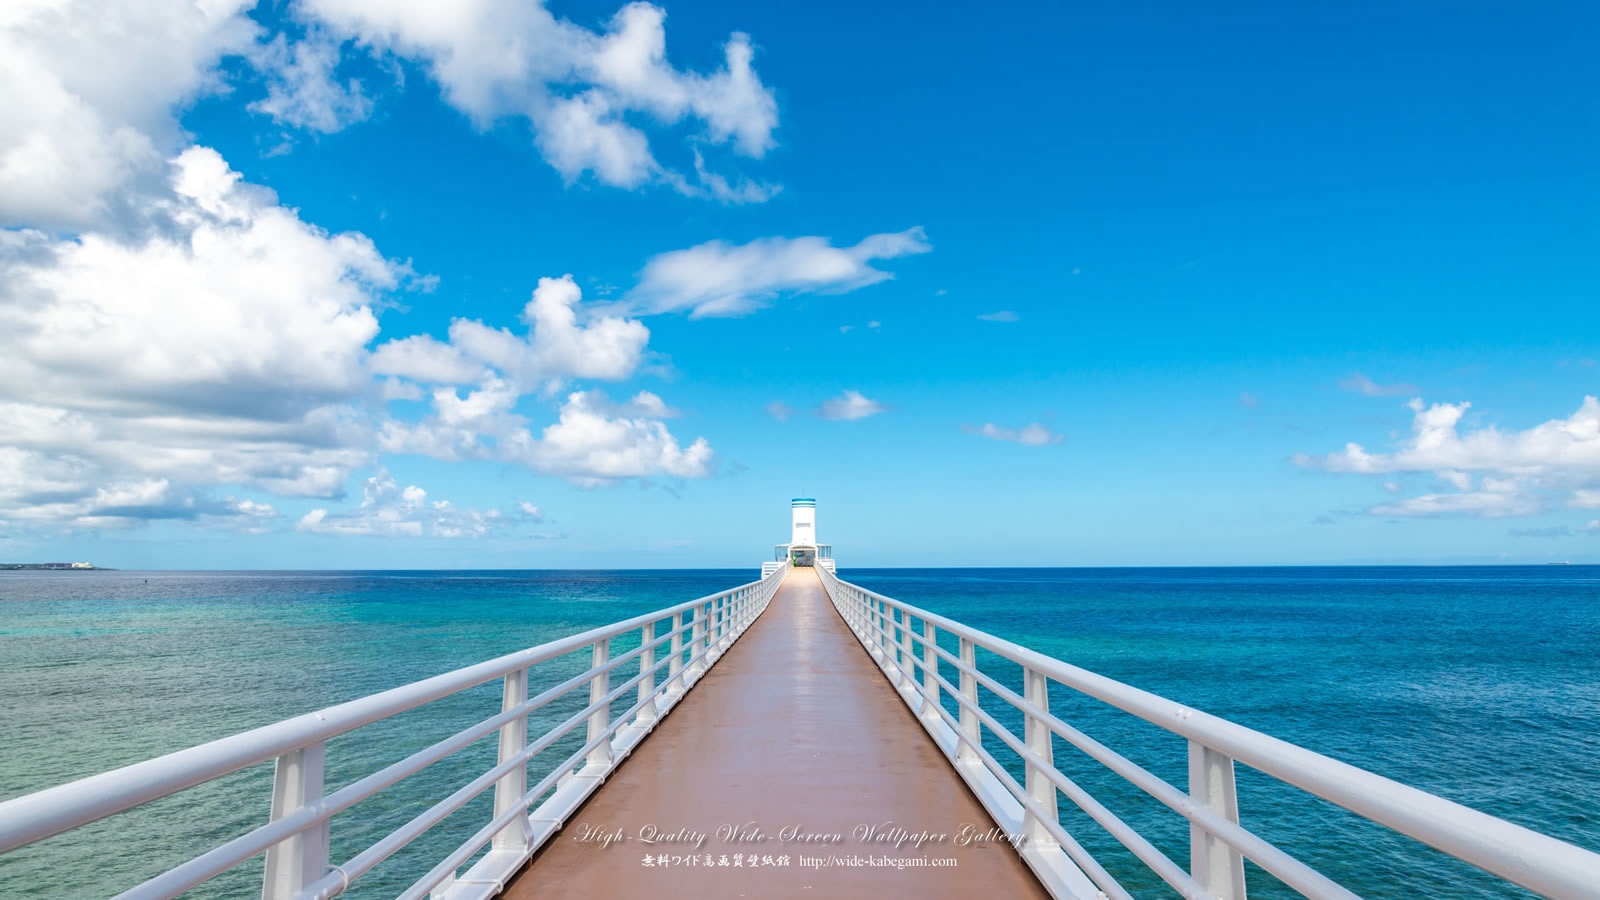 自然風景のワイド壁紙 1600x900 沖縄 ブセナ海中展望塔 無料ワイド